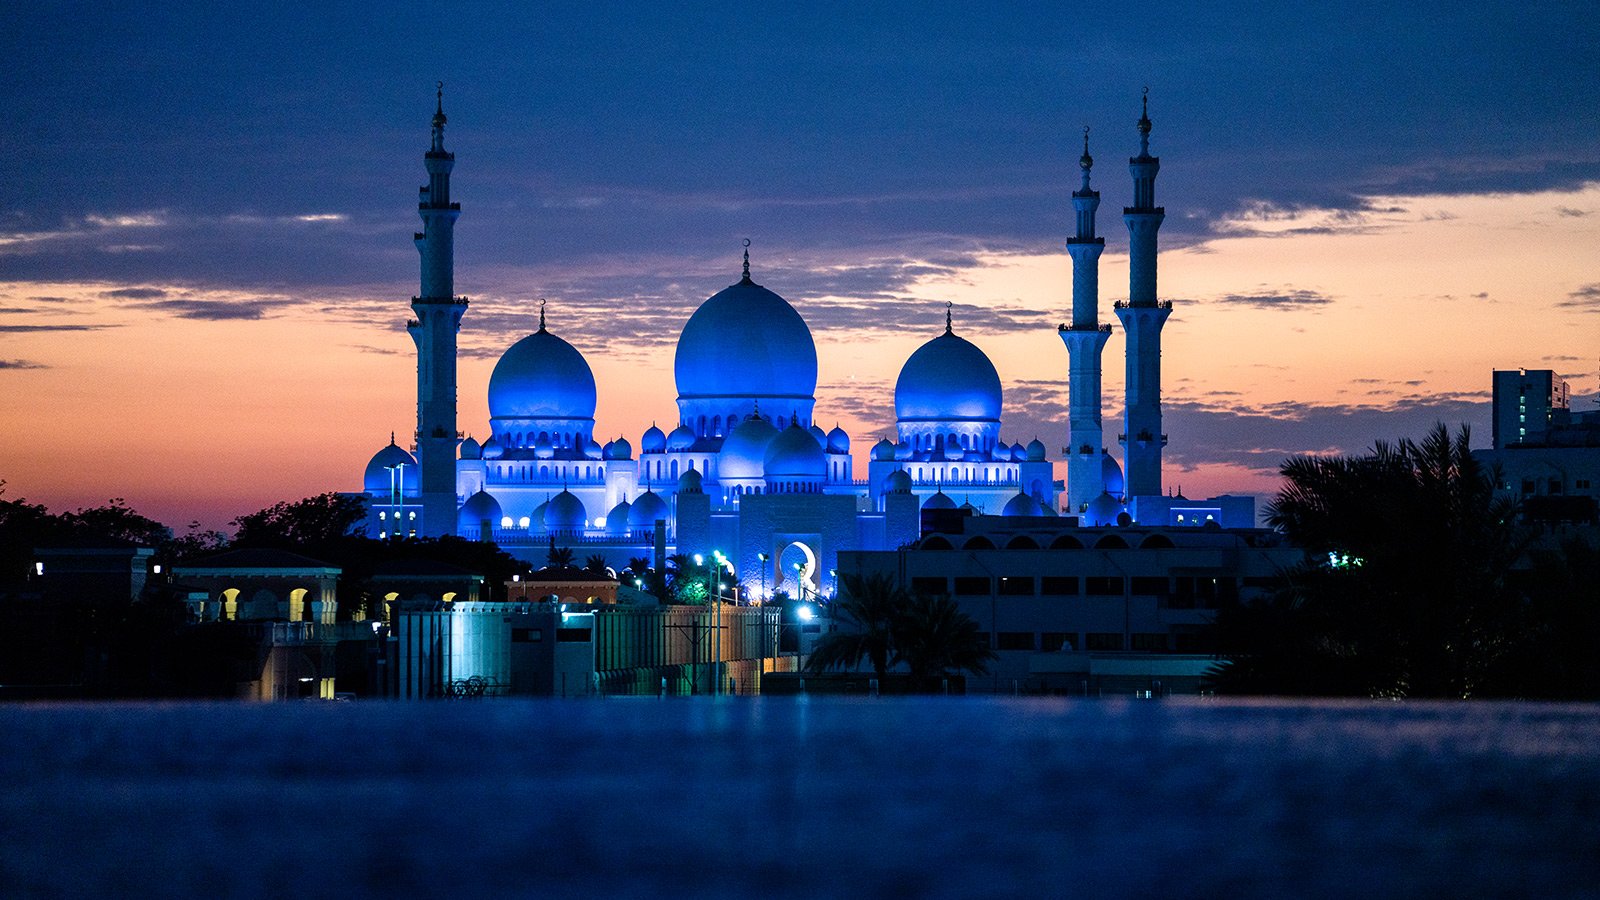 Le célèbre minaret d'Abu Dhabi la nuit, illustrant la spiritualité et l'architecture culturelle.